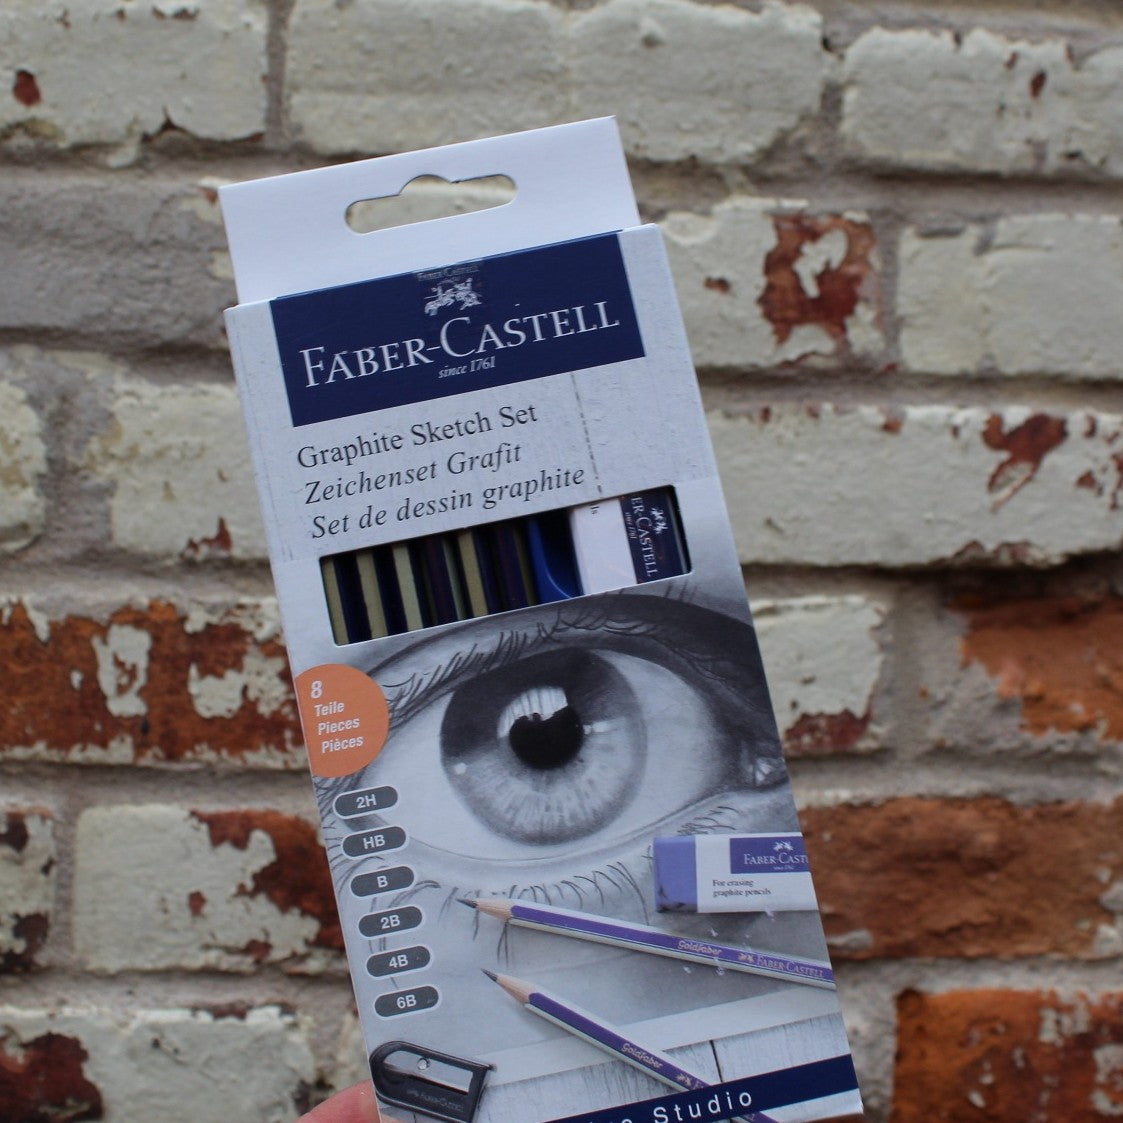 Faber-Castell GoldFaber Studio Graphite Pencil Set - 6 pencils, sharpener,  eraser